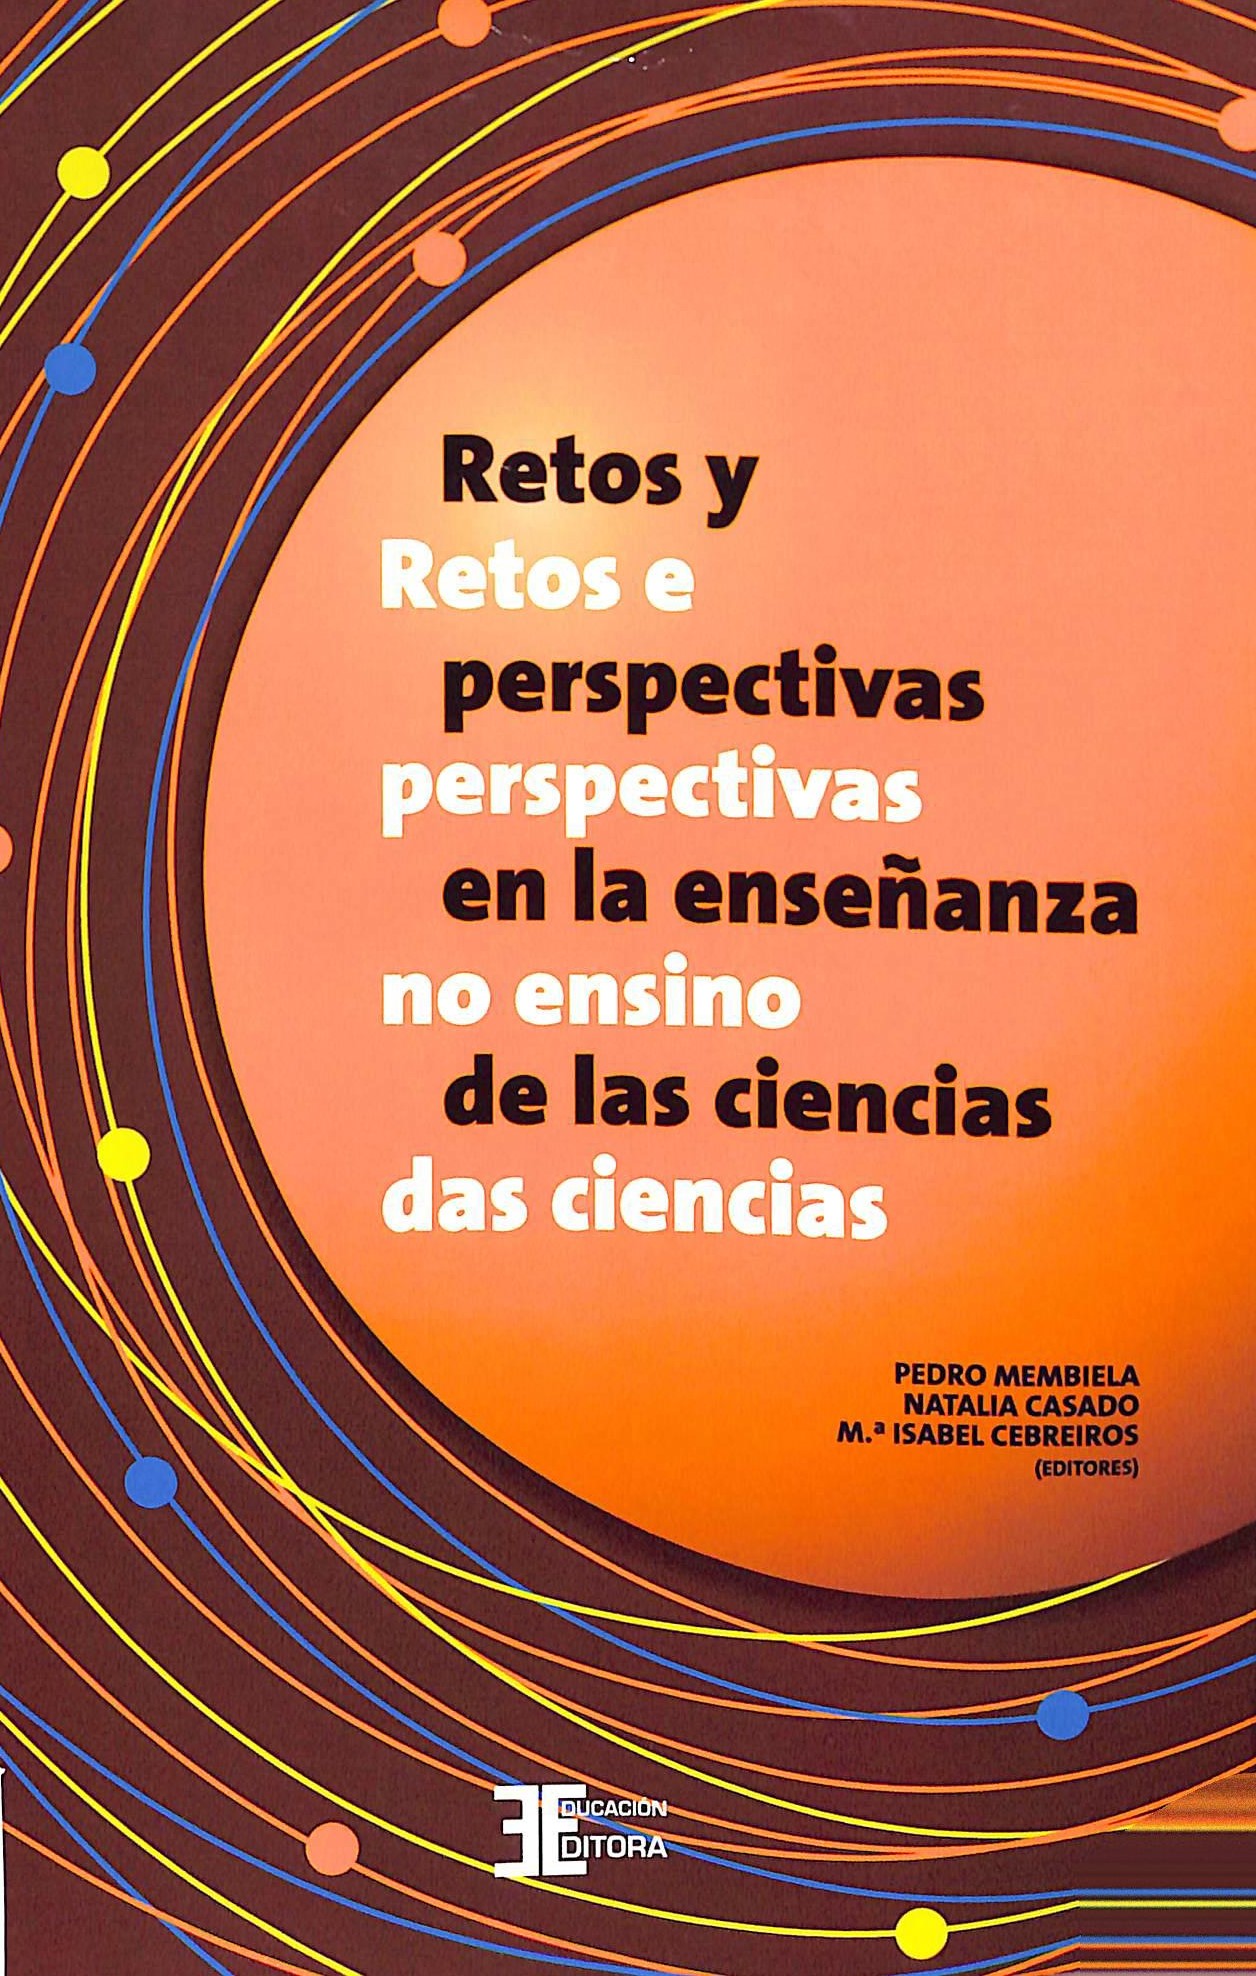 Imagen de portada del libro Retos y perspectivas en la enseñanza de las ciencias